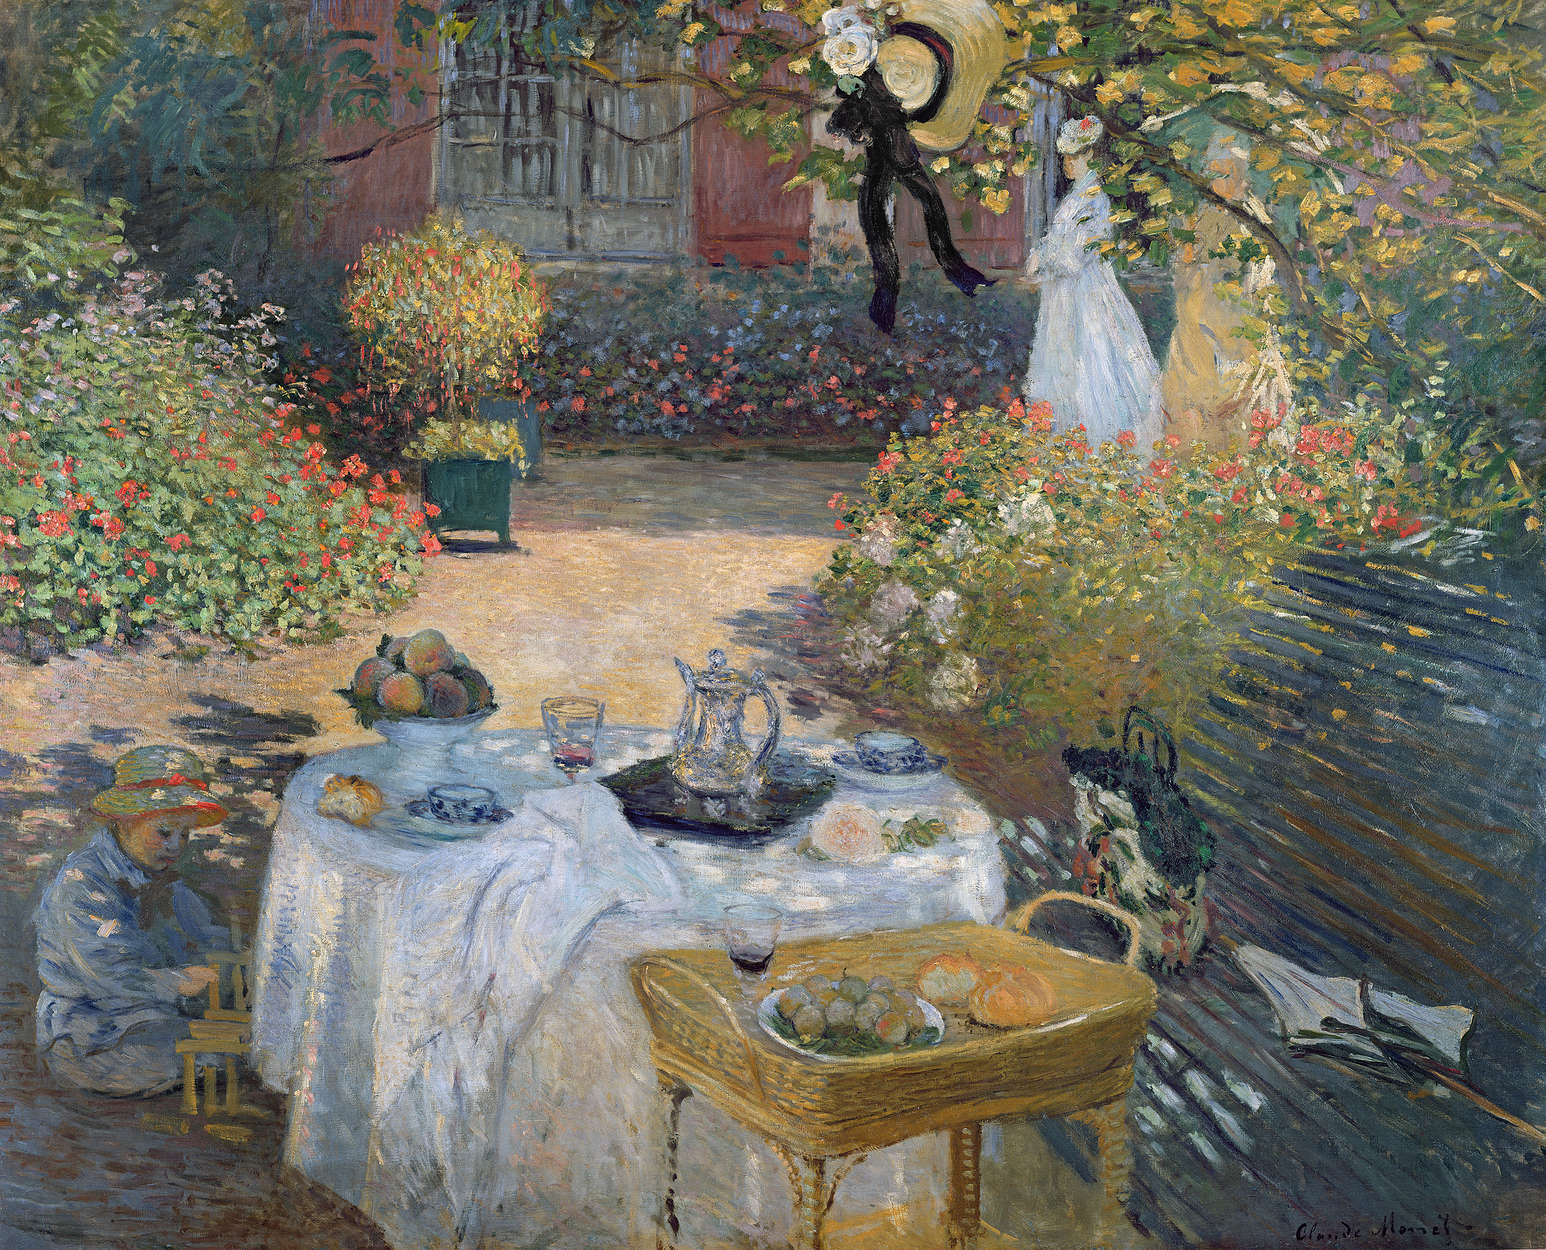             Fotomurali "Il pasto di mezzogiorno: il giardino di Monet ad Argenteuil" di Claude Monet
        